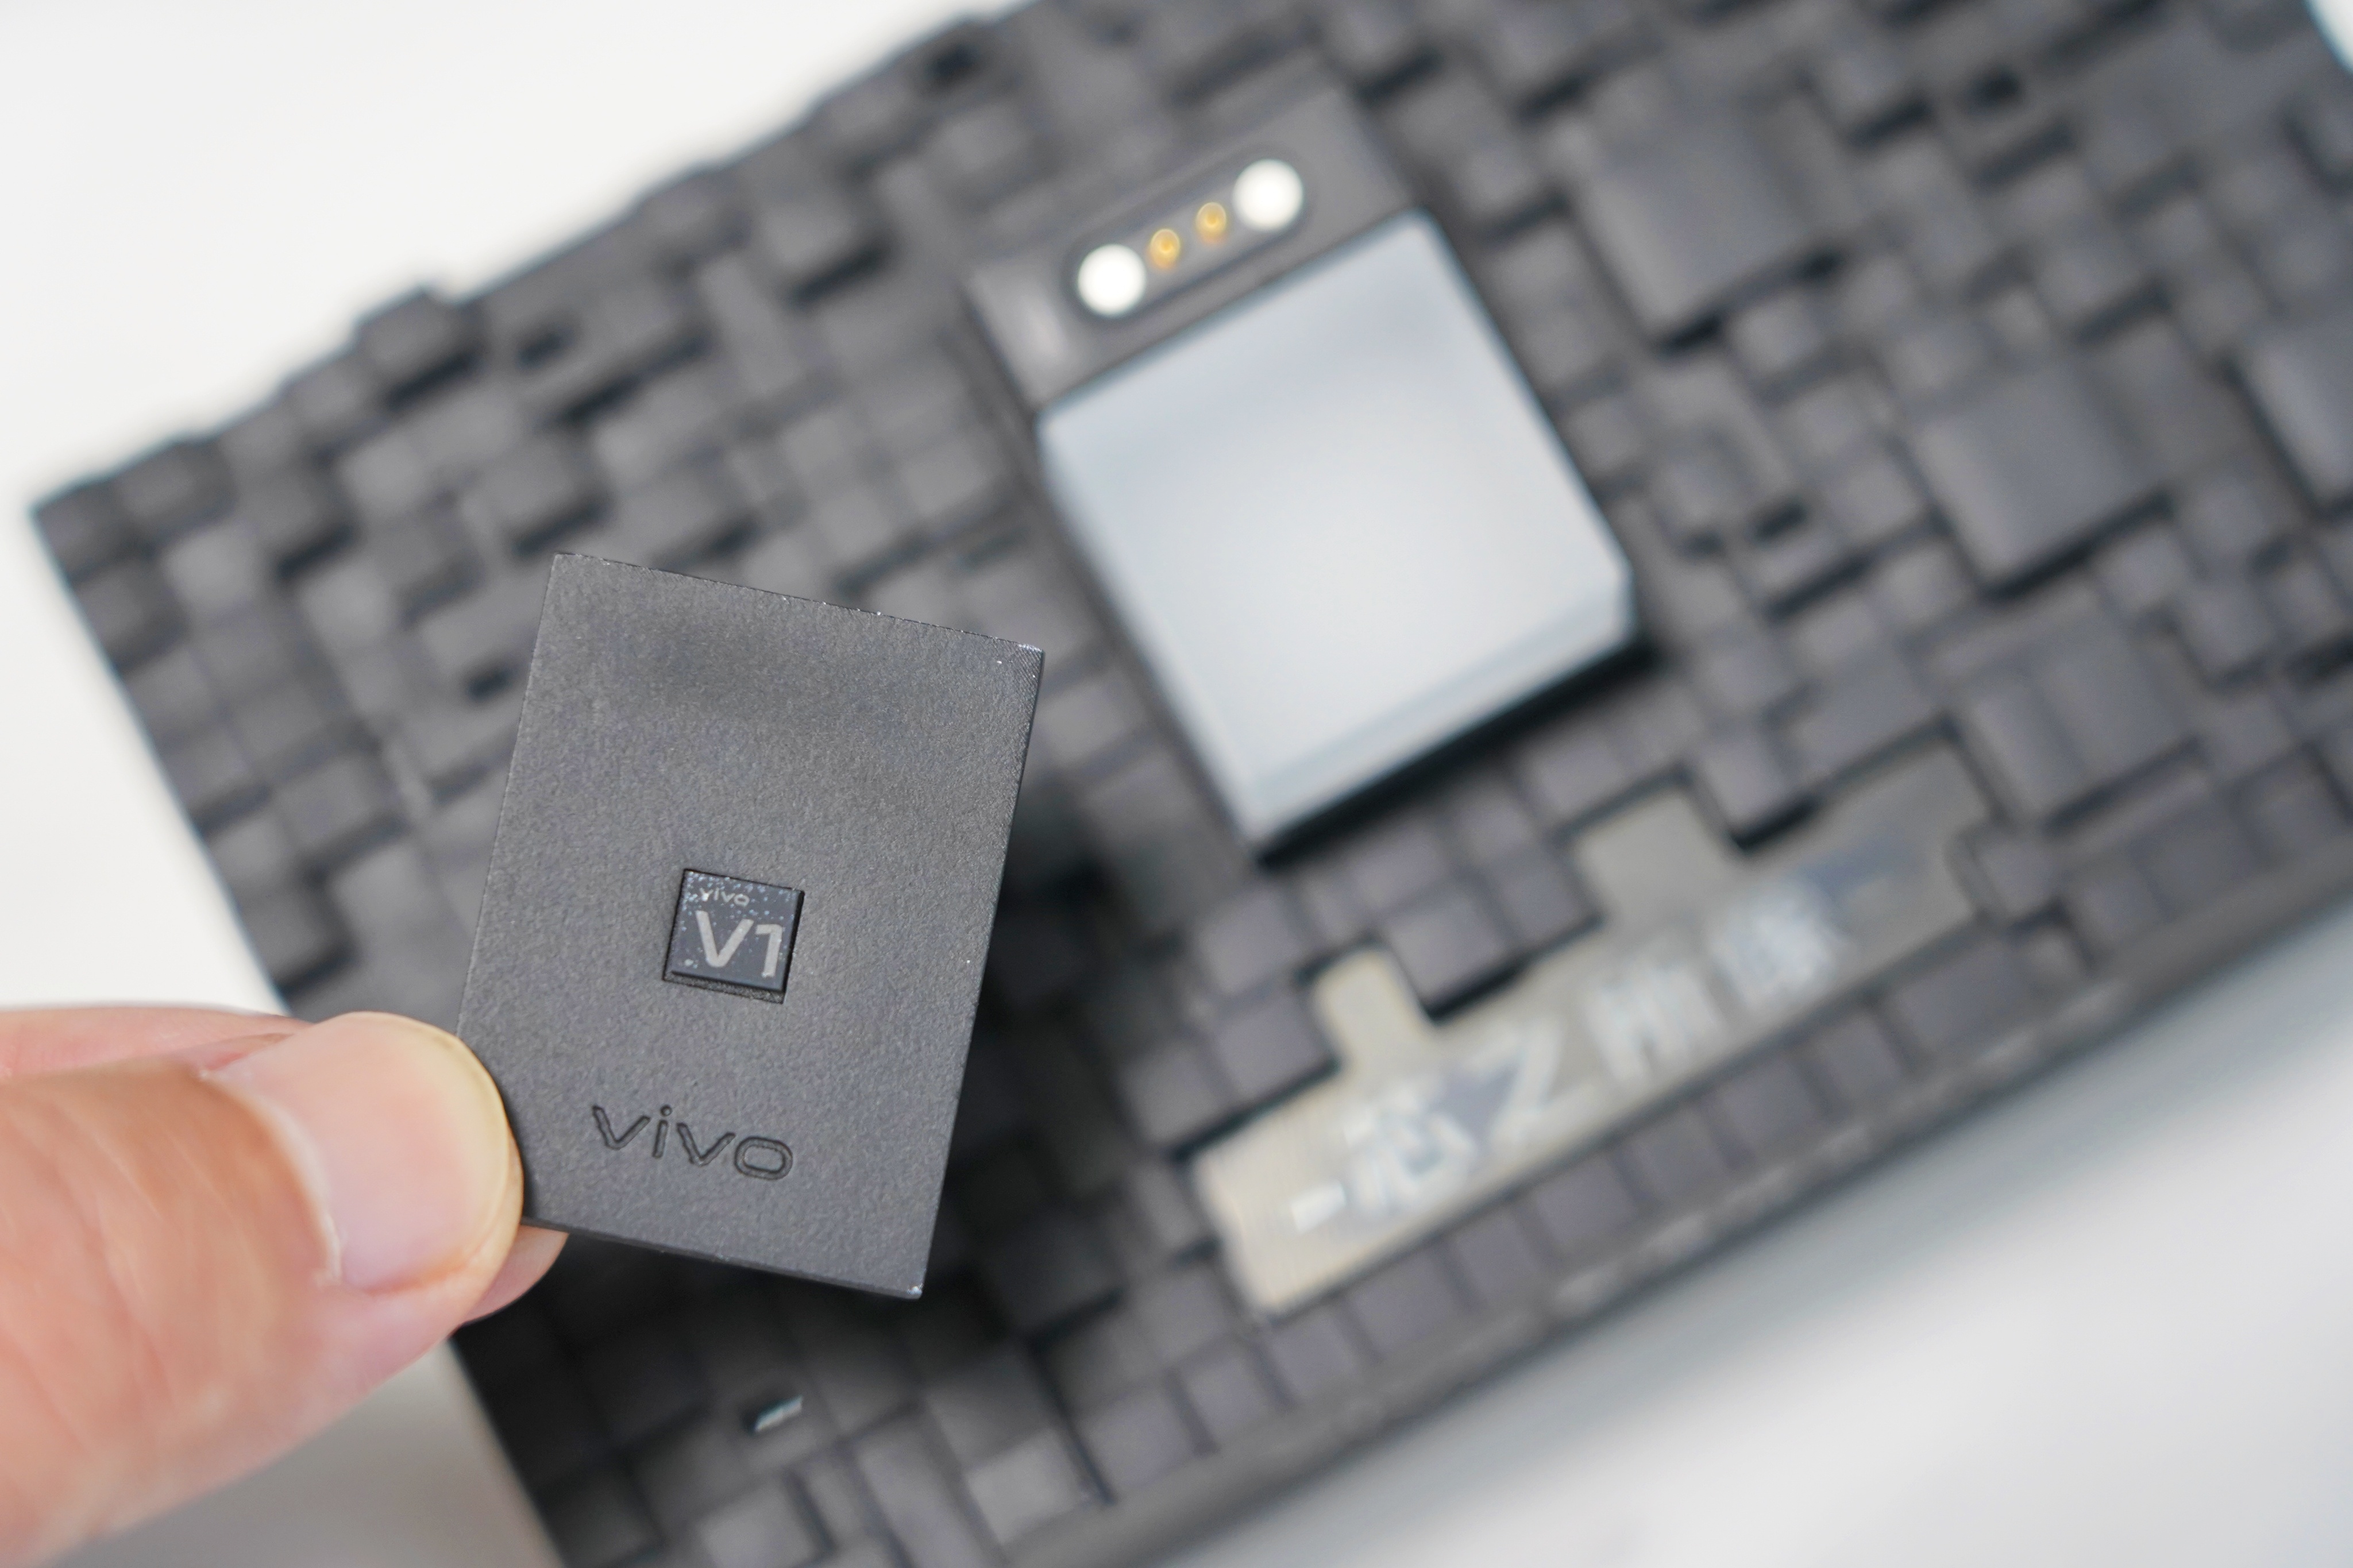 Vivo zapowiada Vivo V1 - autorski procesor obrazu